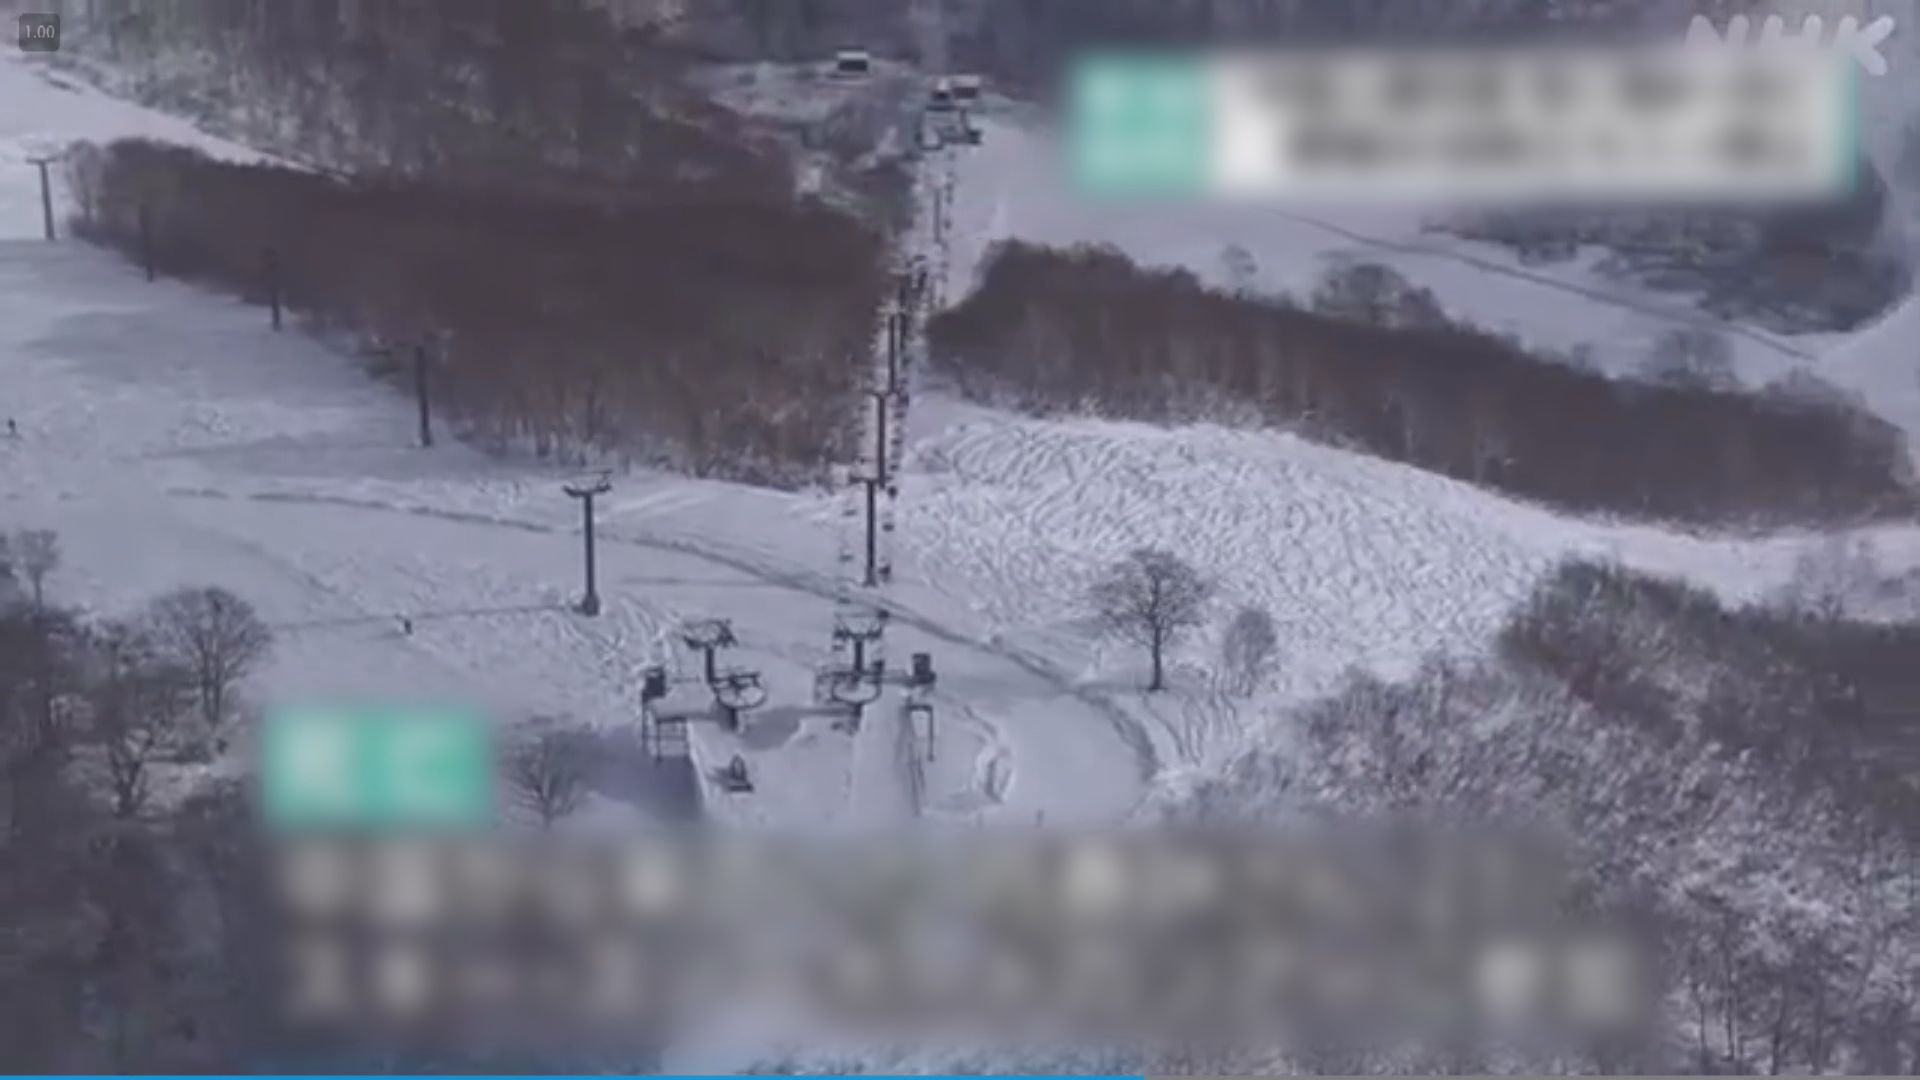 中國女遊客在日本滑雪場疑因摔倒被積雪掩埋死亡